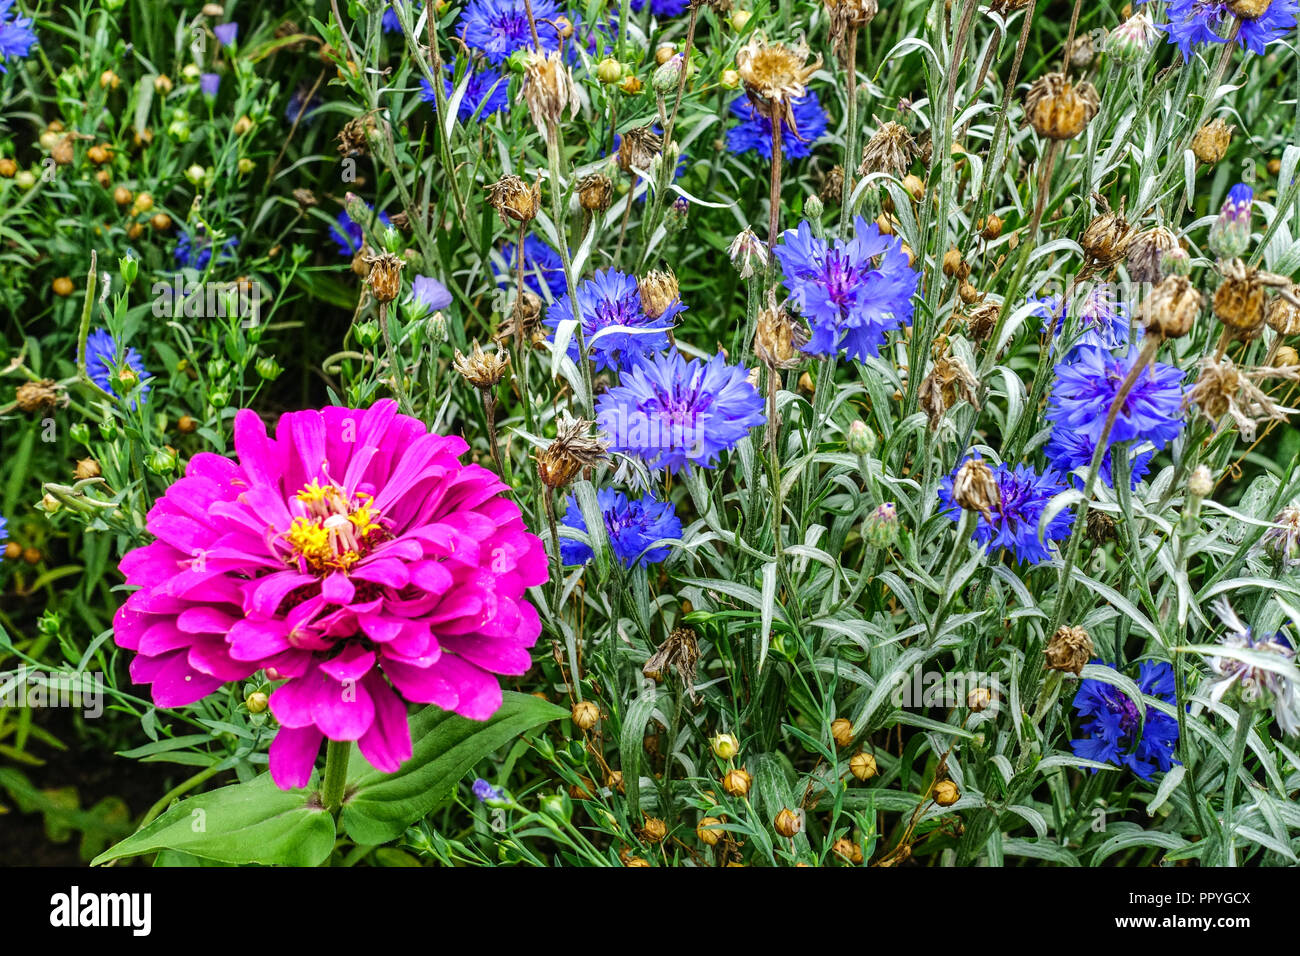 Bleuet, Centaurea cyanus dans le lit de fleurs annuelles bleues, jardin de fleurs de zinnia, croissance, mélange, lit de fleurs Banque D'Images